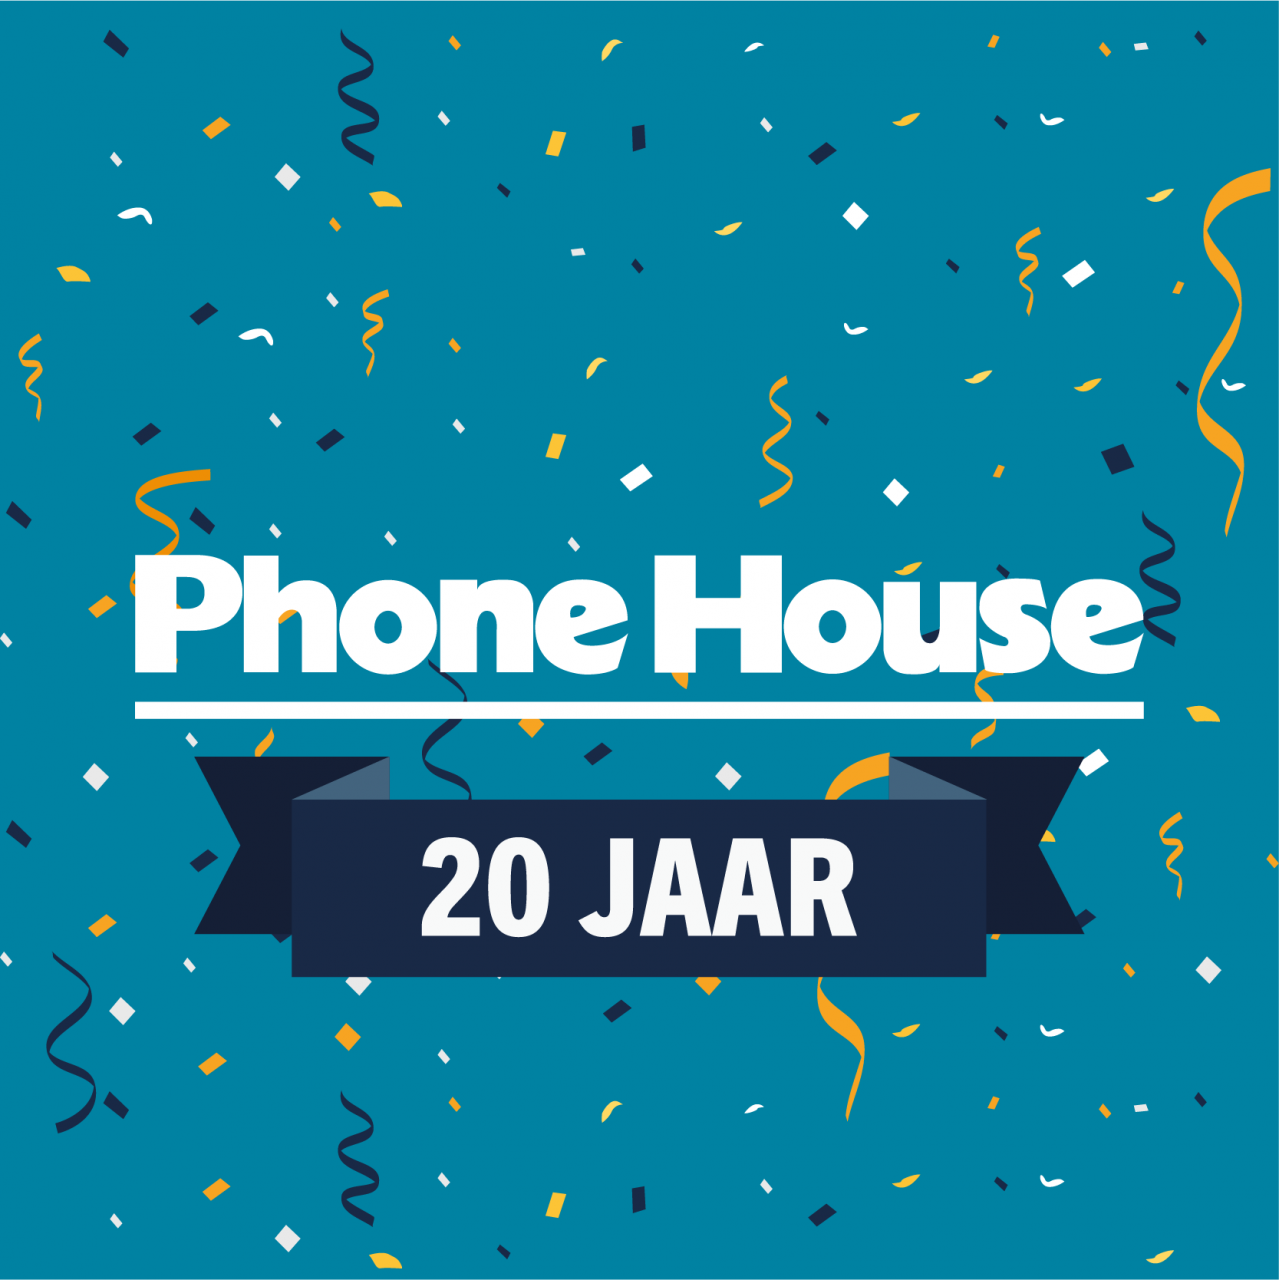 Phone House trakteert voor 20 jarig bestaan